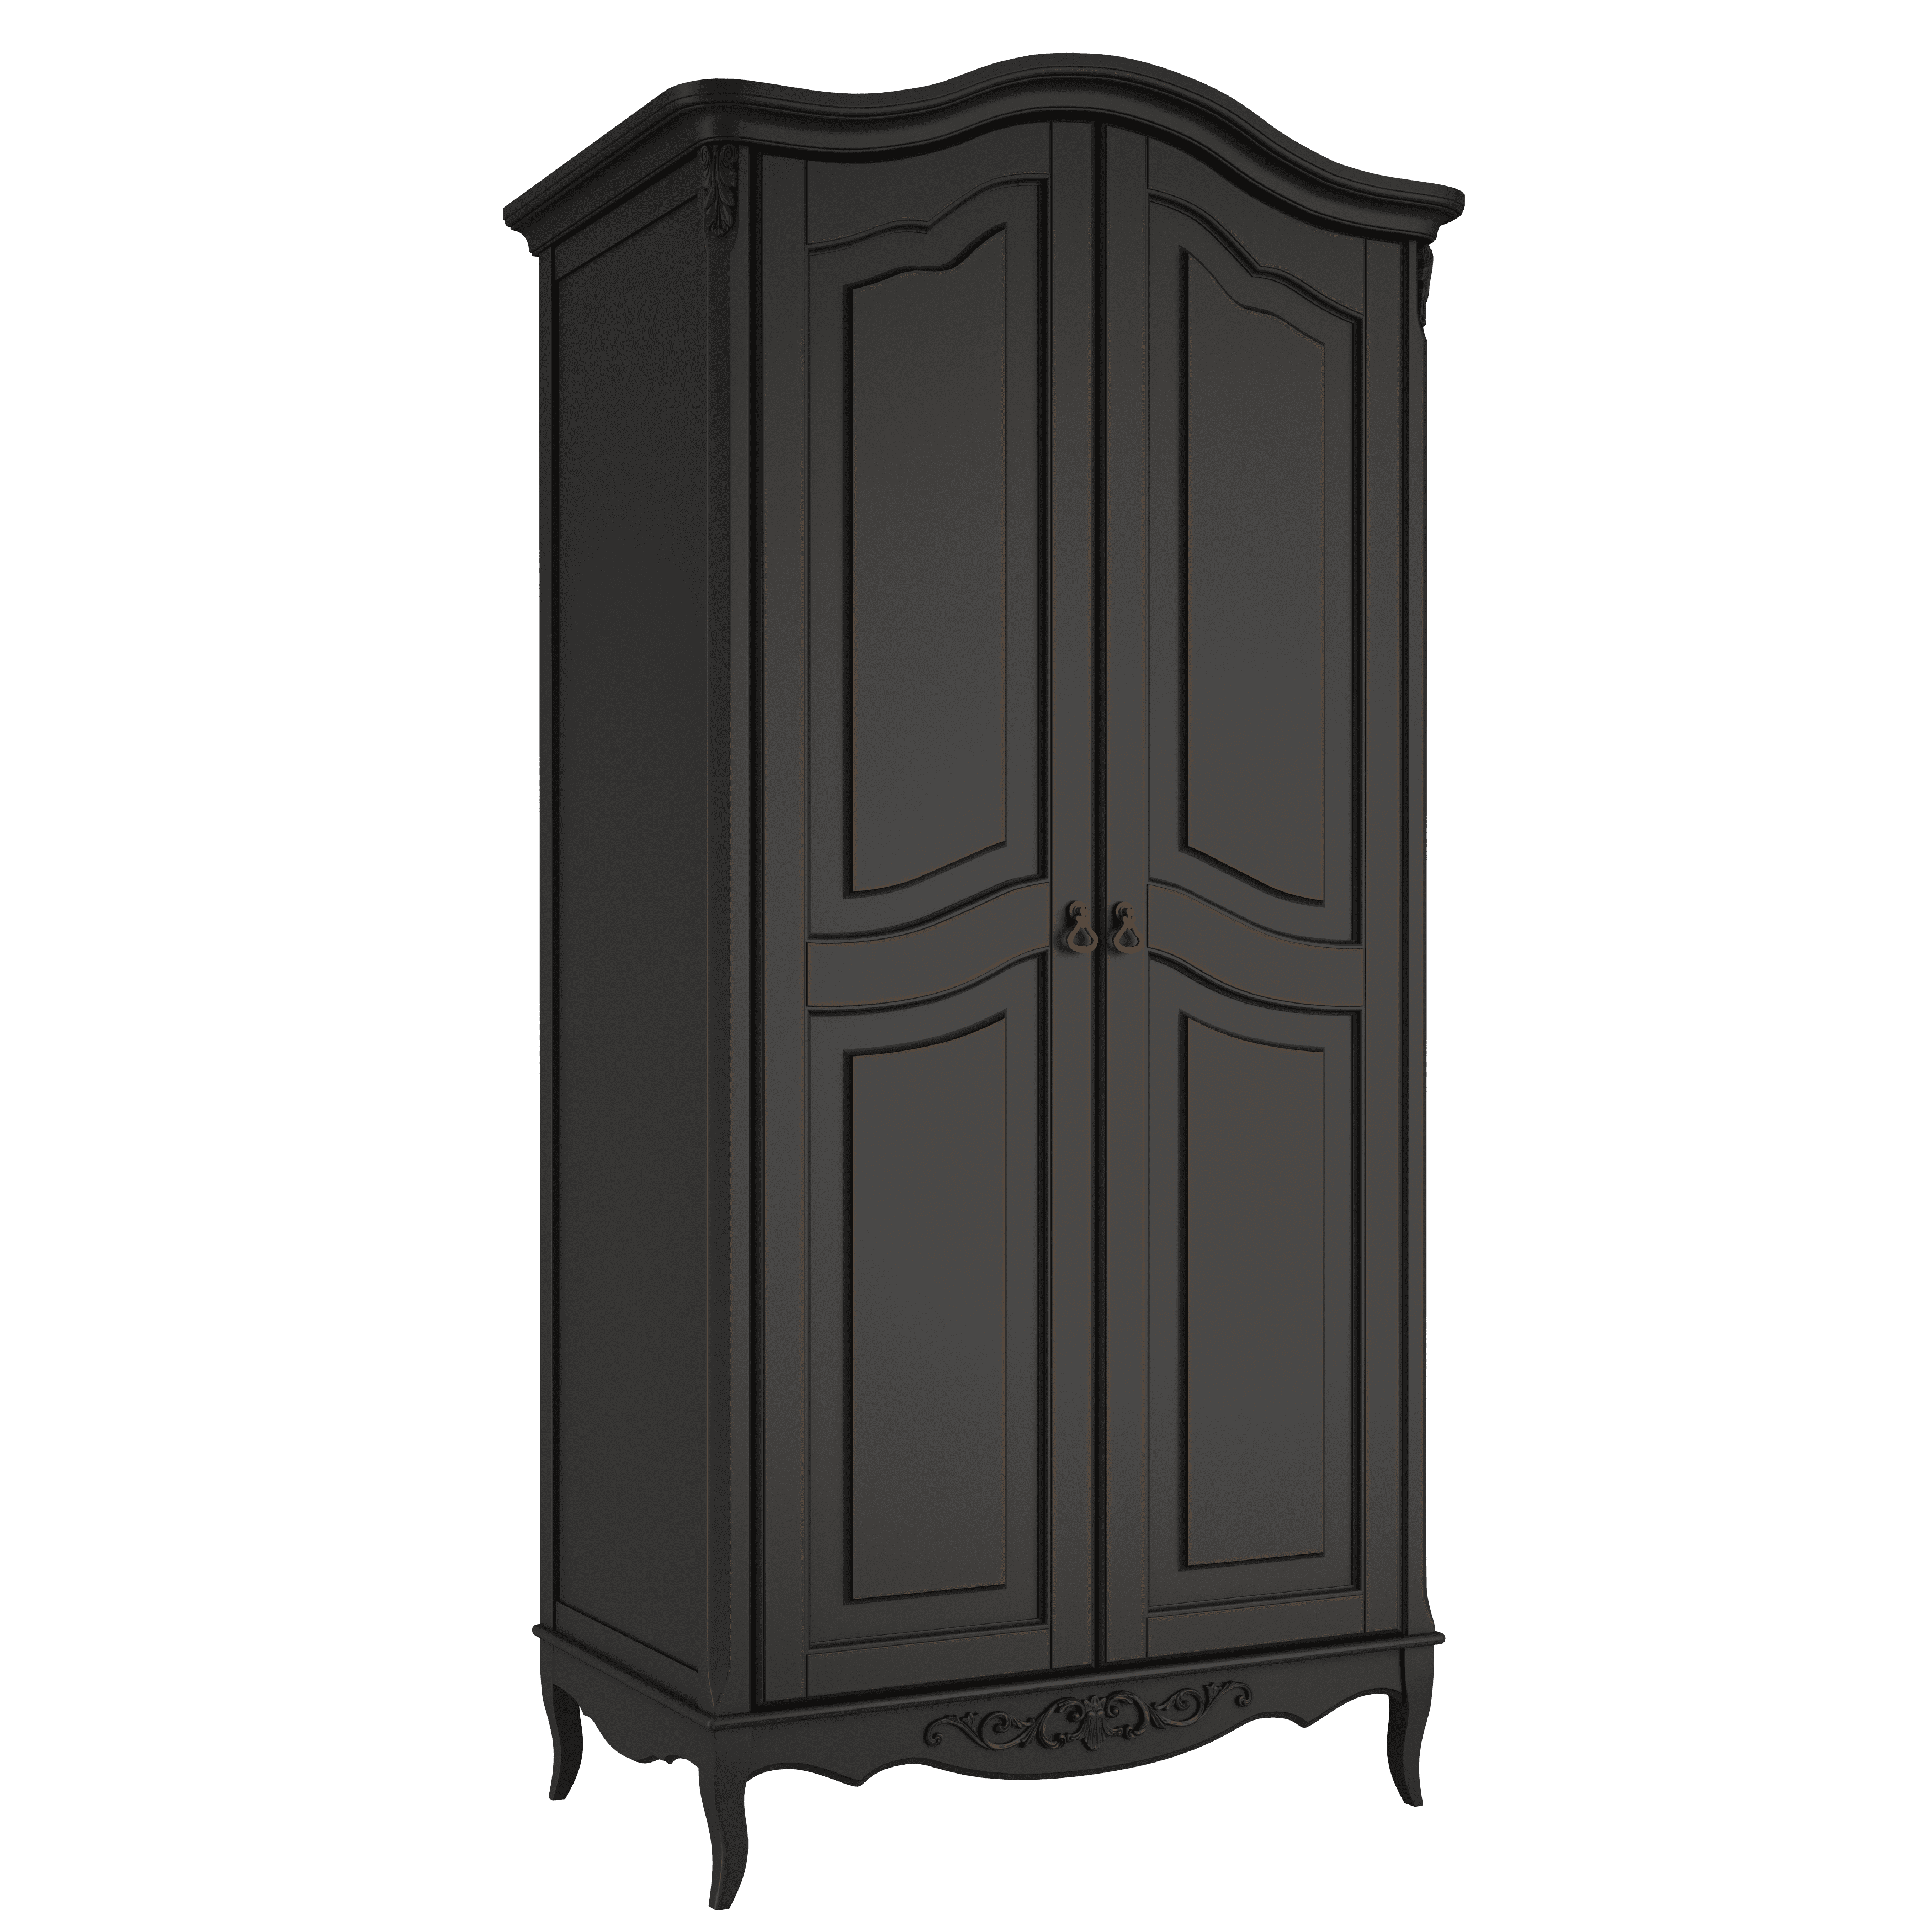 Шкаф платяной Aletan Provence, 2-х дверный, цвет: черный, размер 107х66х210 см (B802BL)B802BL